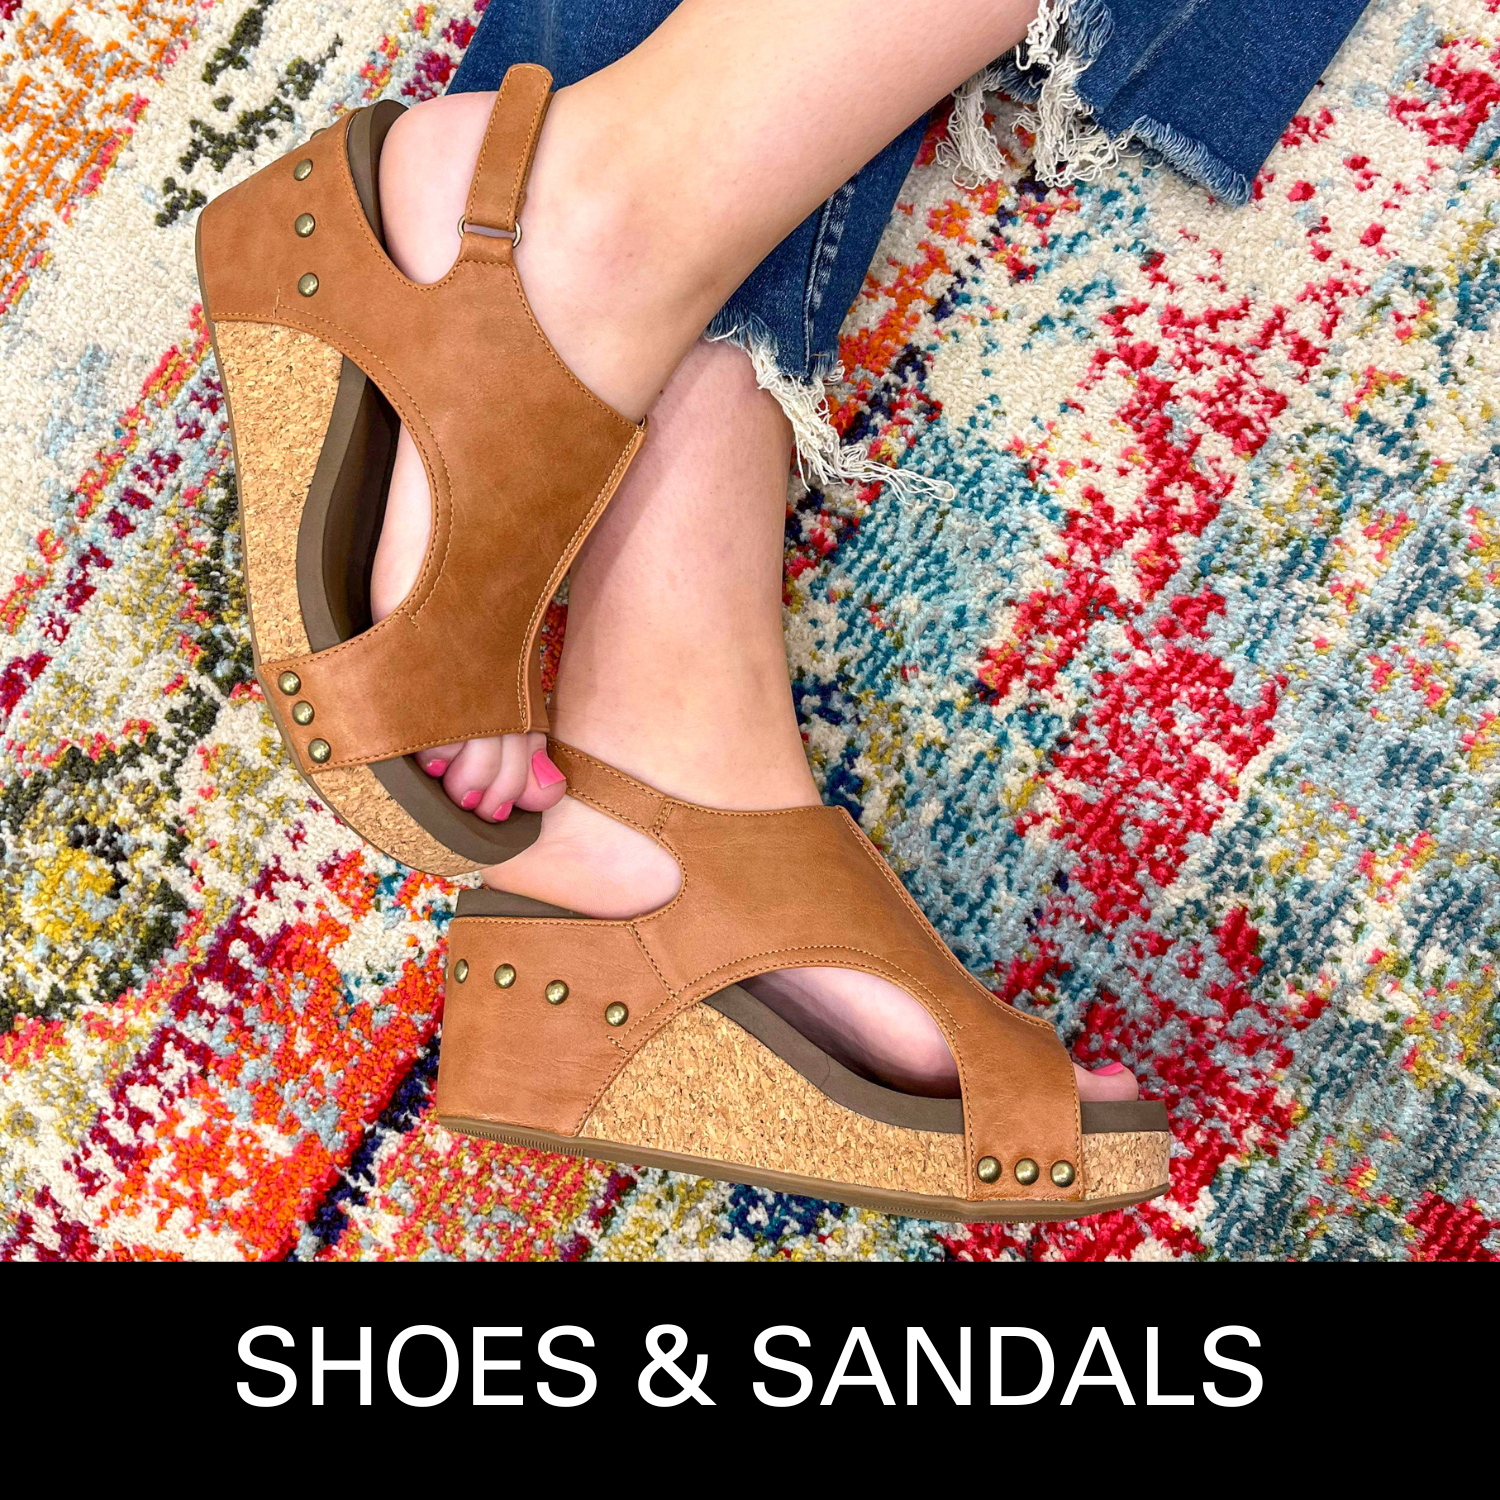 Corkys-Footwear-Shoes-Sandals-Wedges-Flip-Flops